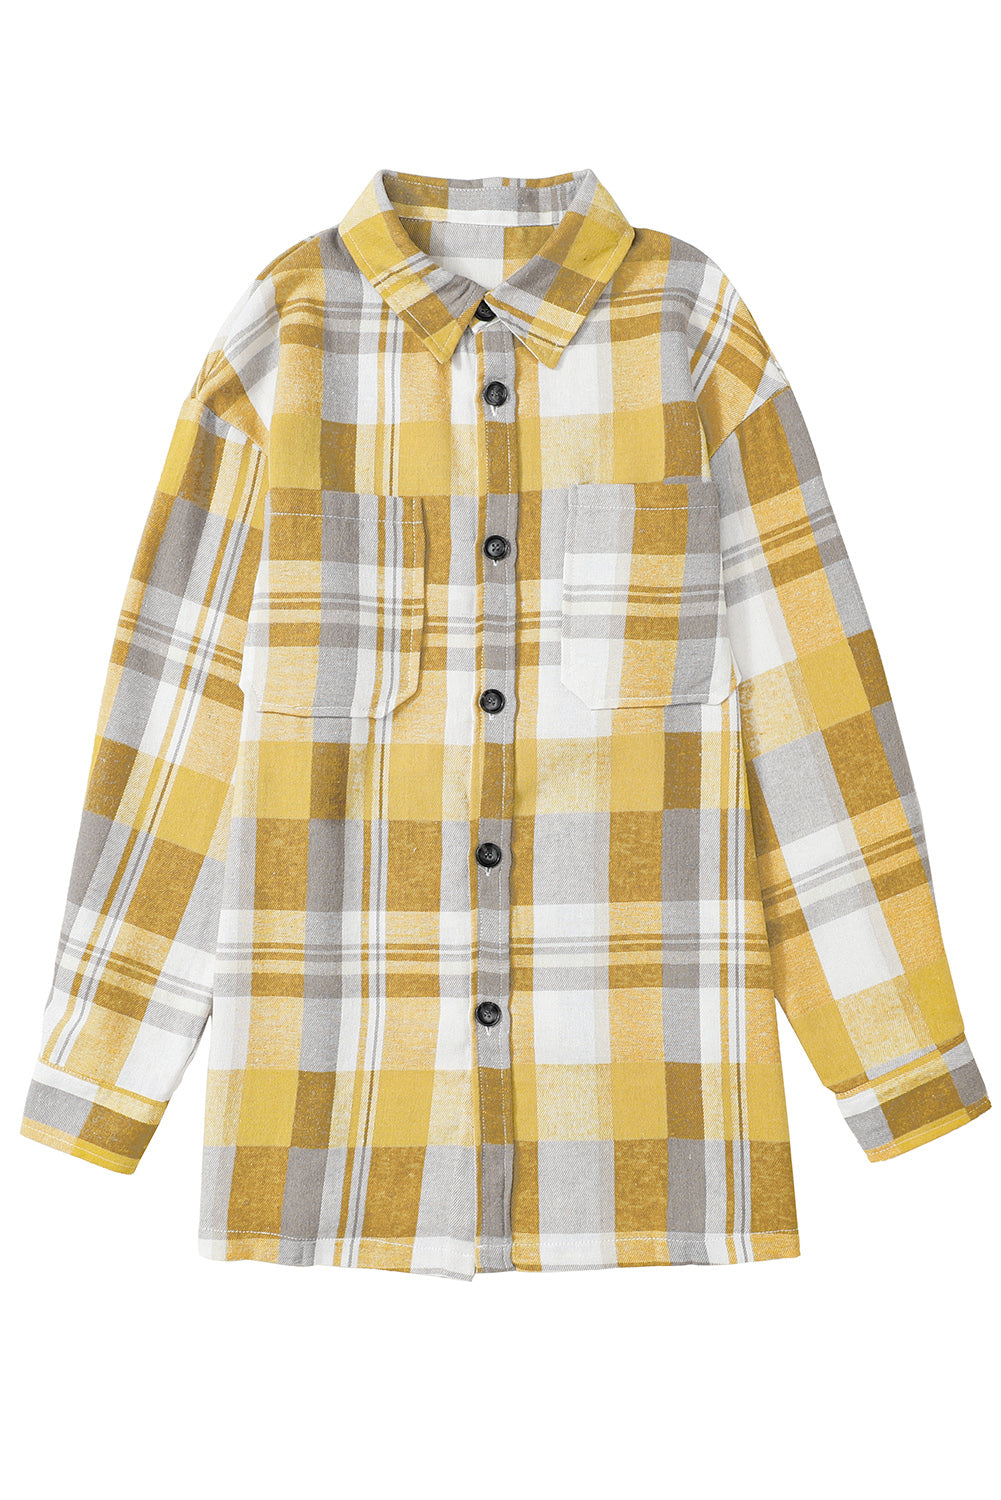 Chemise jaune à carreaux boutonnée avec poche plaquée